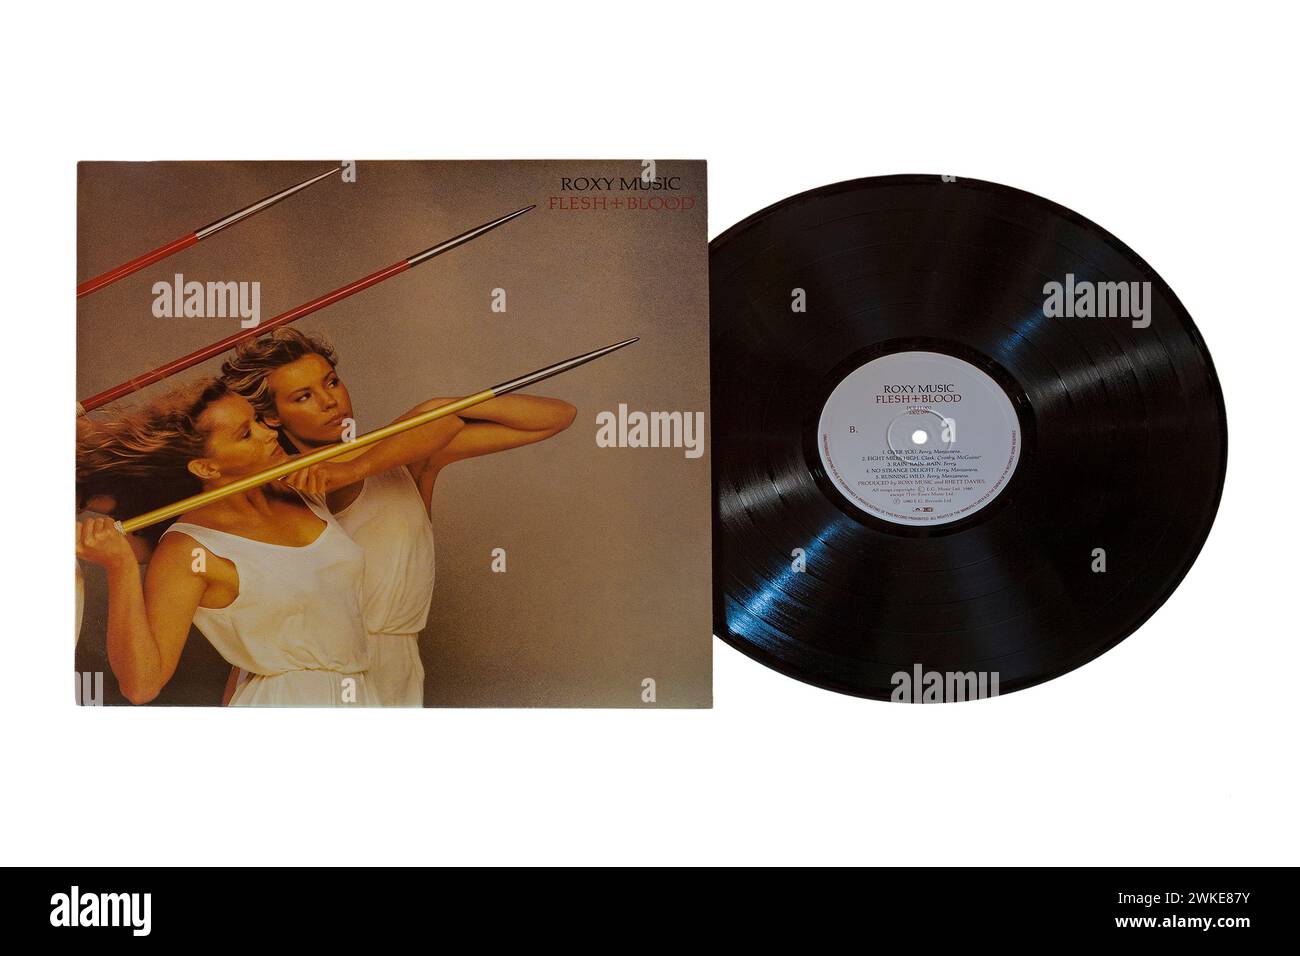 Roxy Music Flesh + Blood, Flesh and Blood, Vinyl-Album-Cover isoliert auf weißem Hintergrund - 1980 Stockfoto